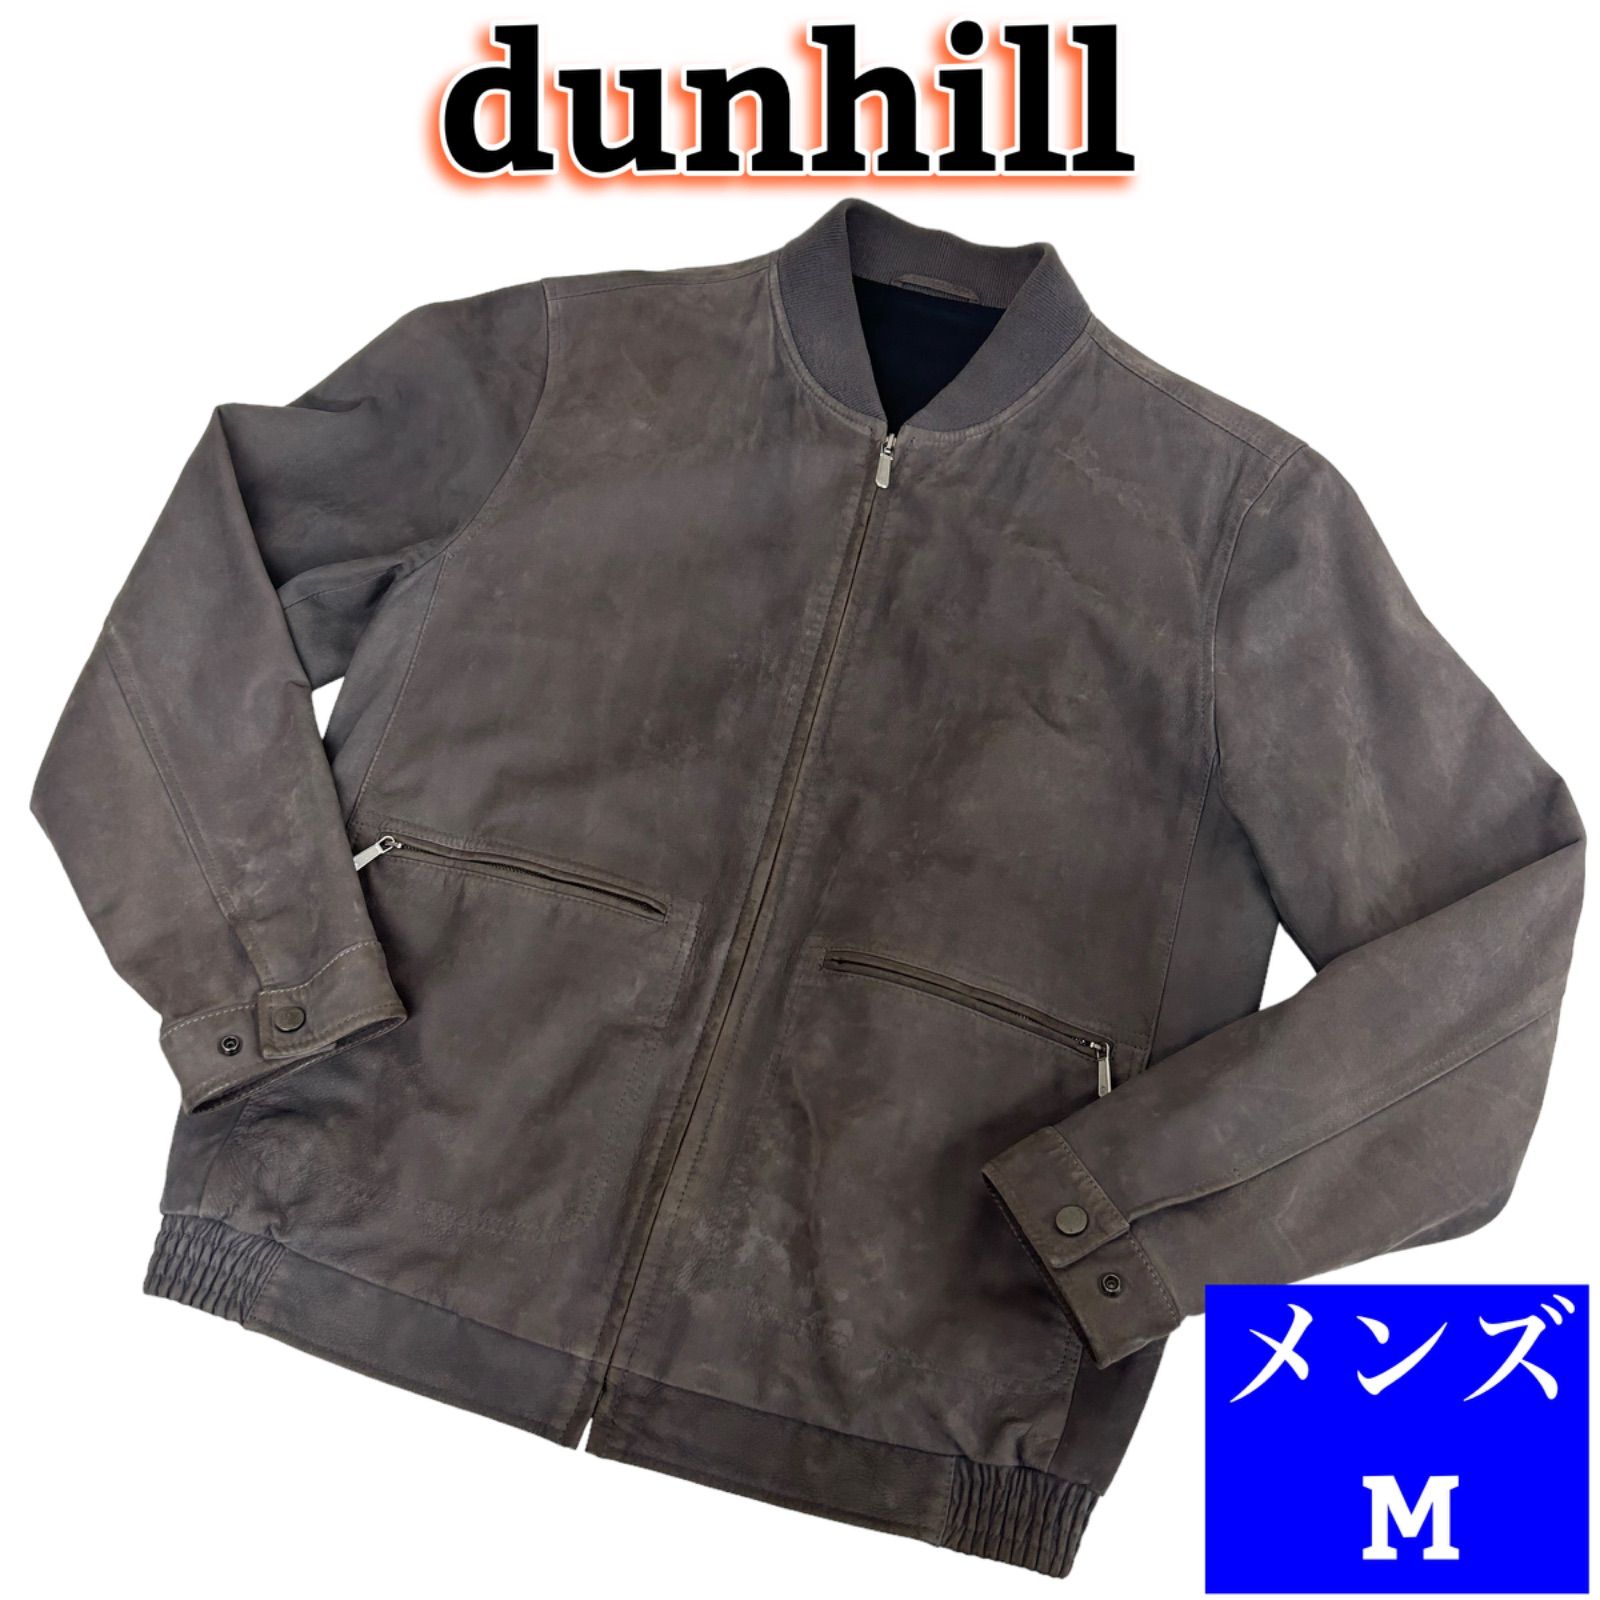 dunhill ダンヒル メンズ スウェード ジップアップ レザージャケット